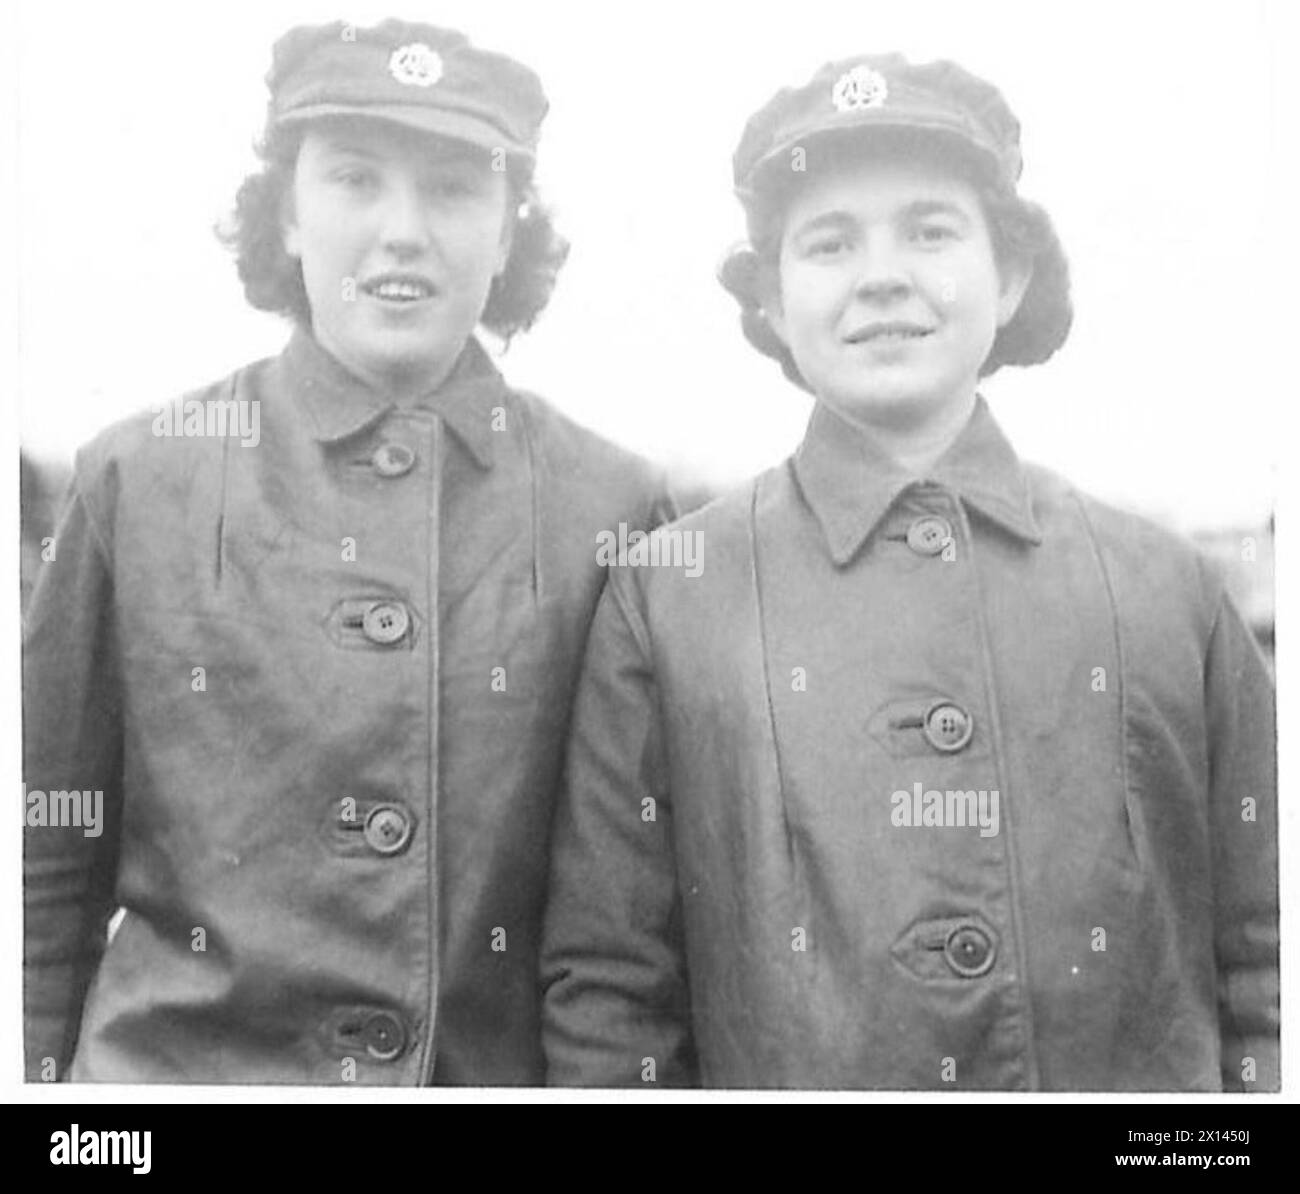 DU CHILI POUR REJOINDRE L'ATS - de gauche à droite : Ptes. Isabelle Trevena et Dora Charleworth photographiées dans un ATS Centre British Army Banque D'Images